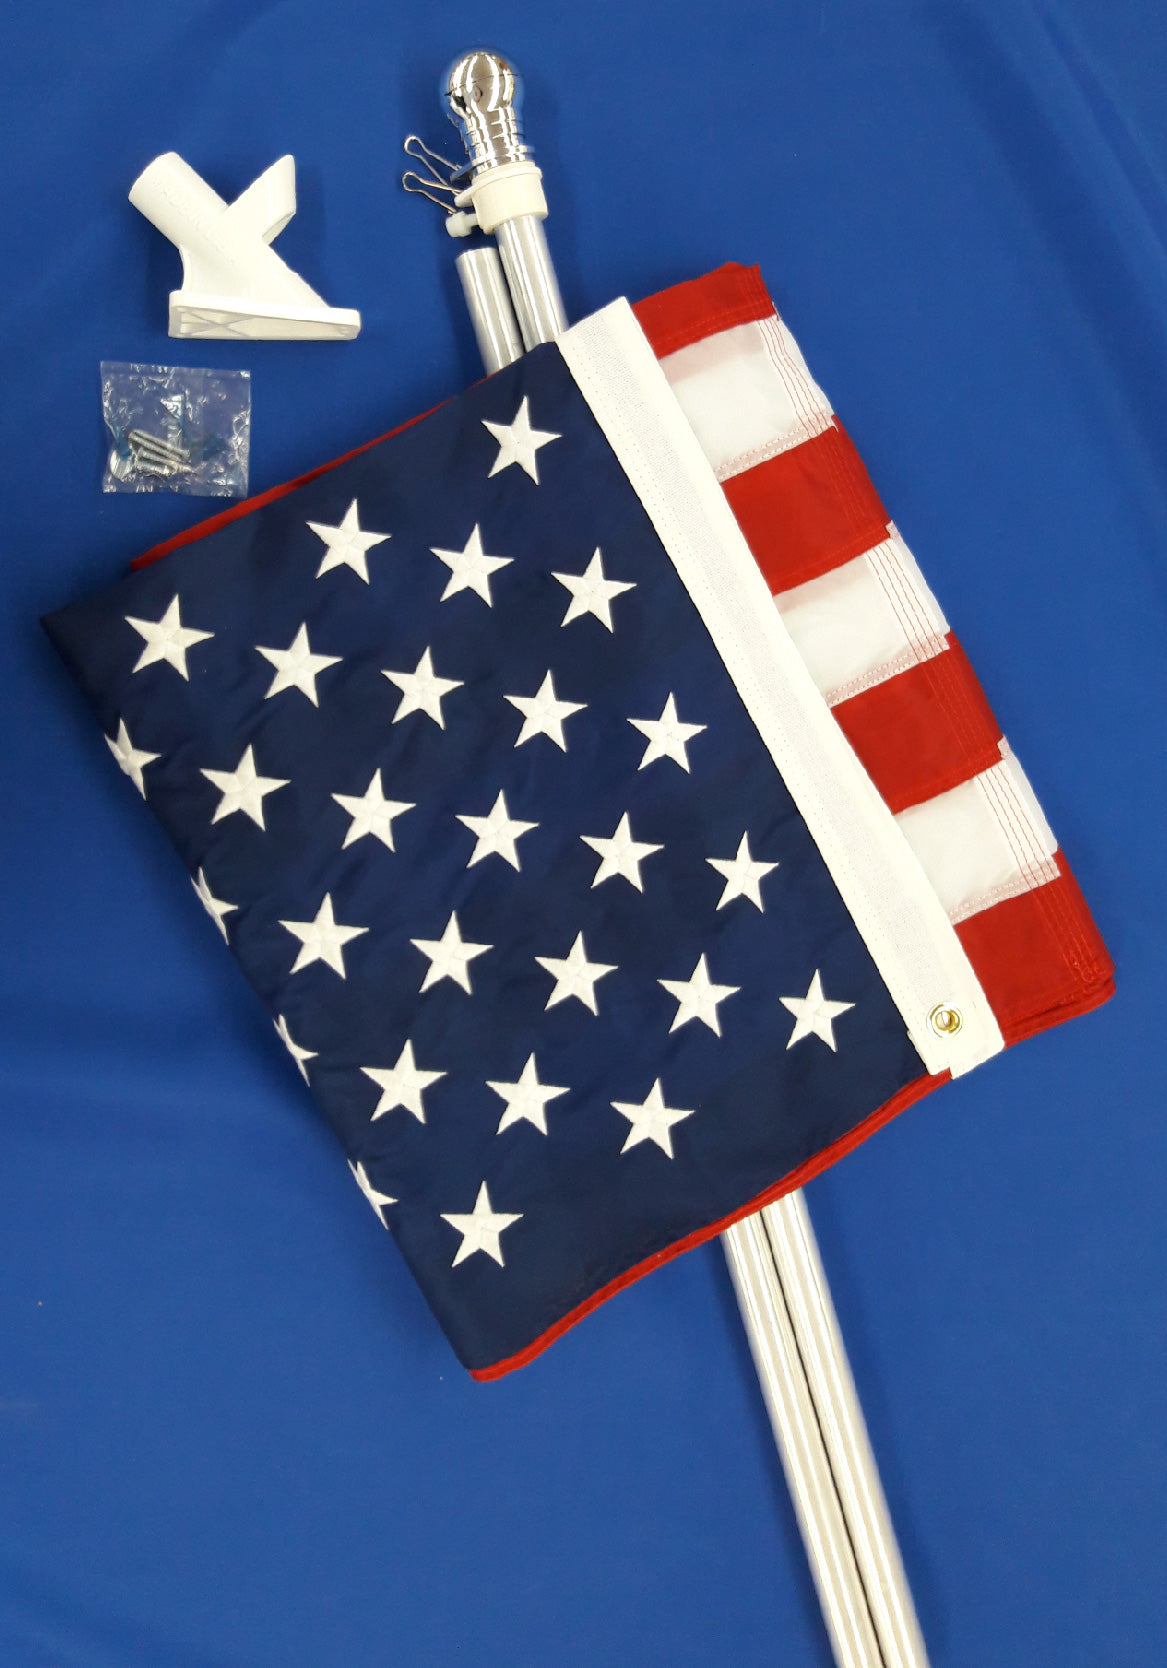 6' aluminum house kit with 2-way Bracket and U.S. Flag